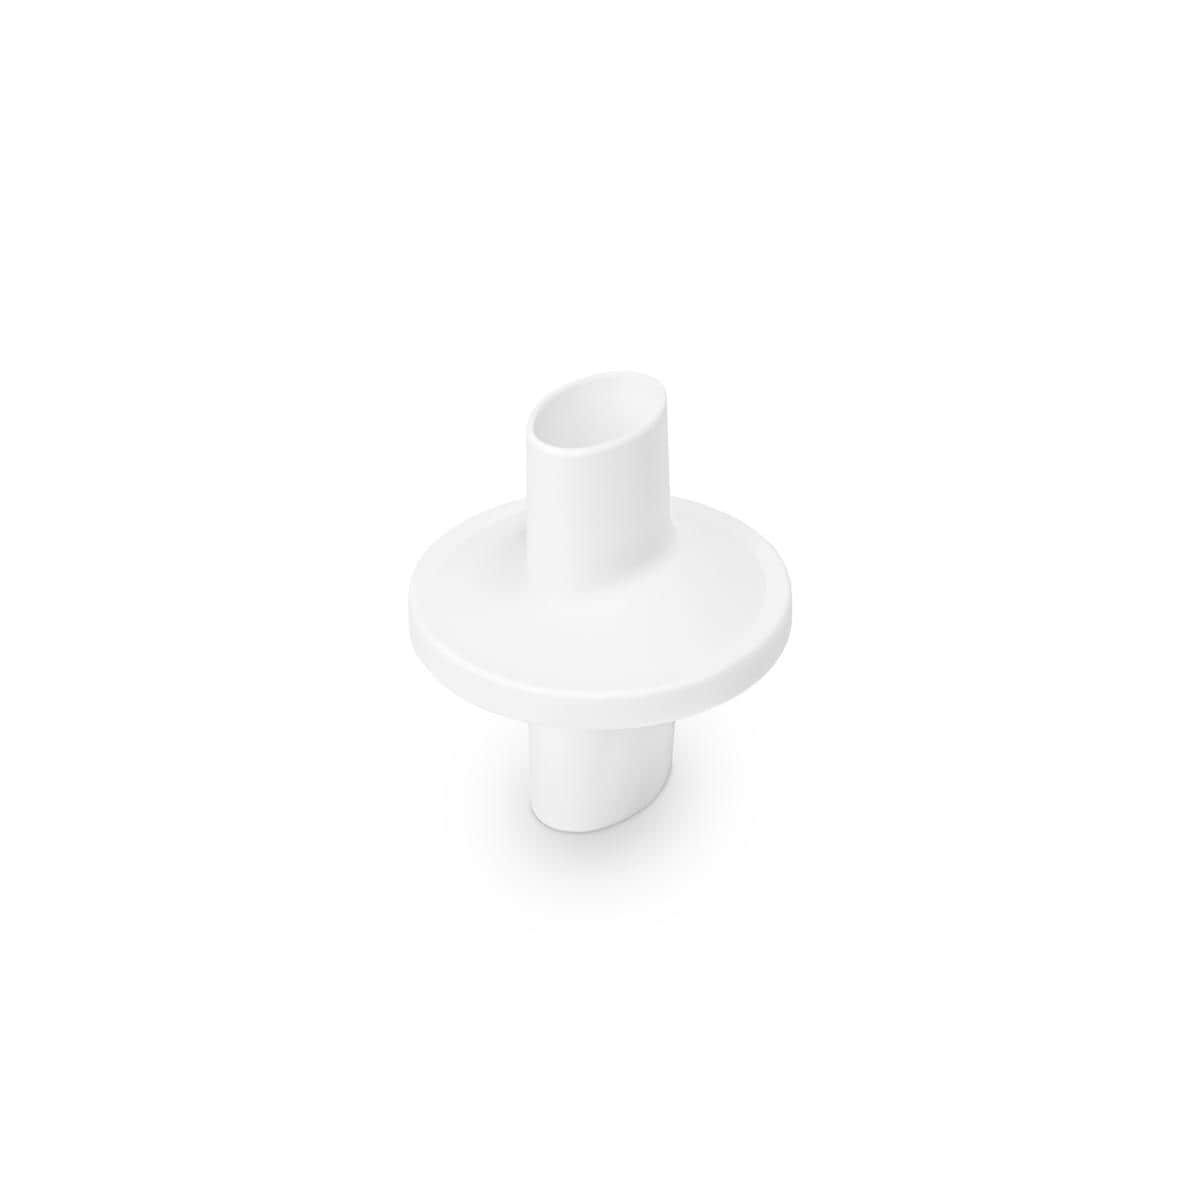 Disposable bacteriefilter voor mTablet spirometer - per 50 stuks